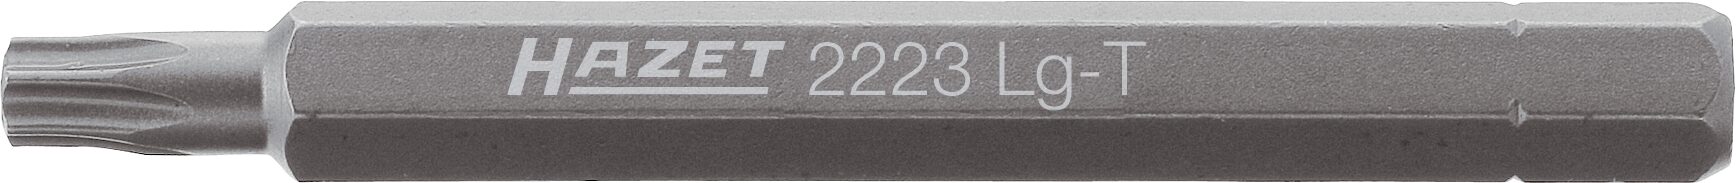 HAZET Bit 2223LG-T25 · Sechskant massiv 6,3 (1/4 Zoll) · Innen TORX® Profil · T25